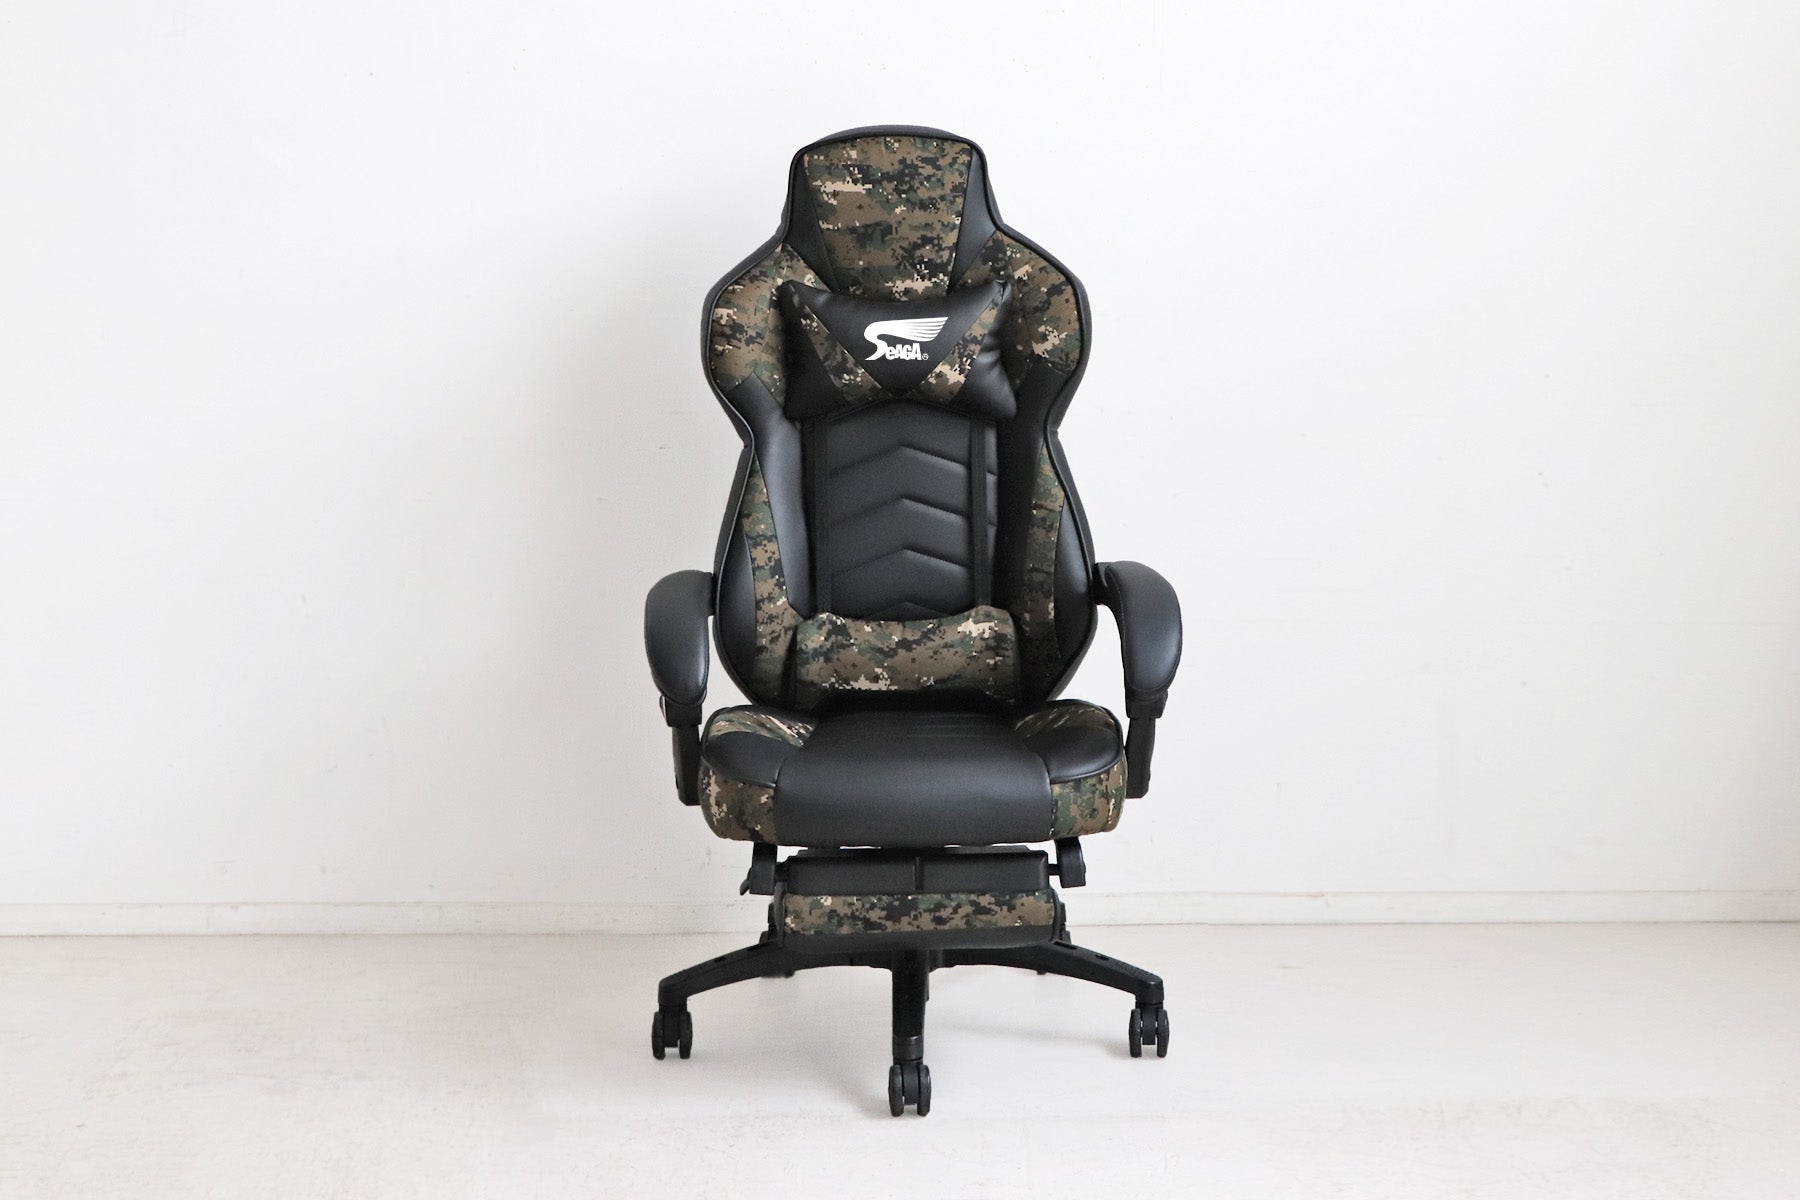 Gaming Chair SeAGA-03 GR